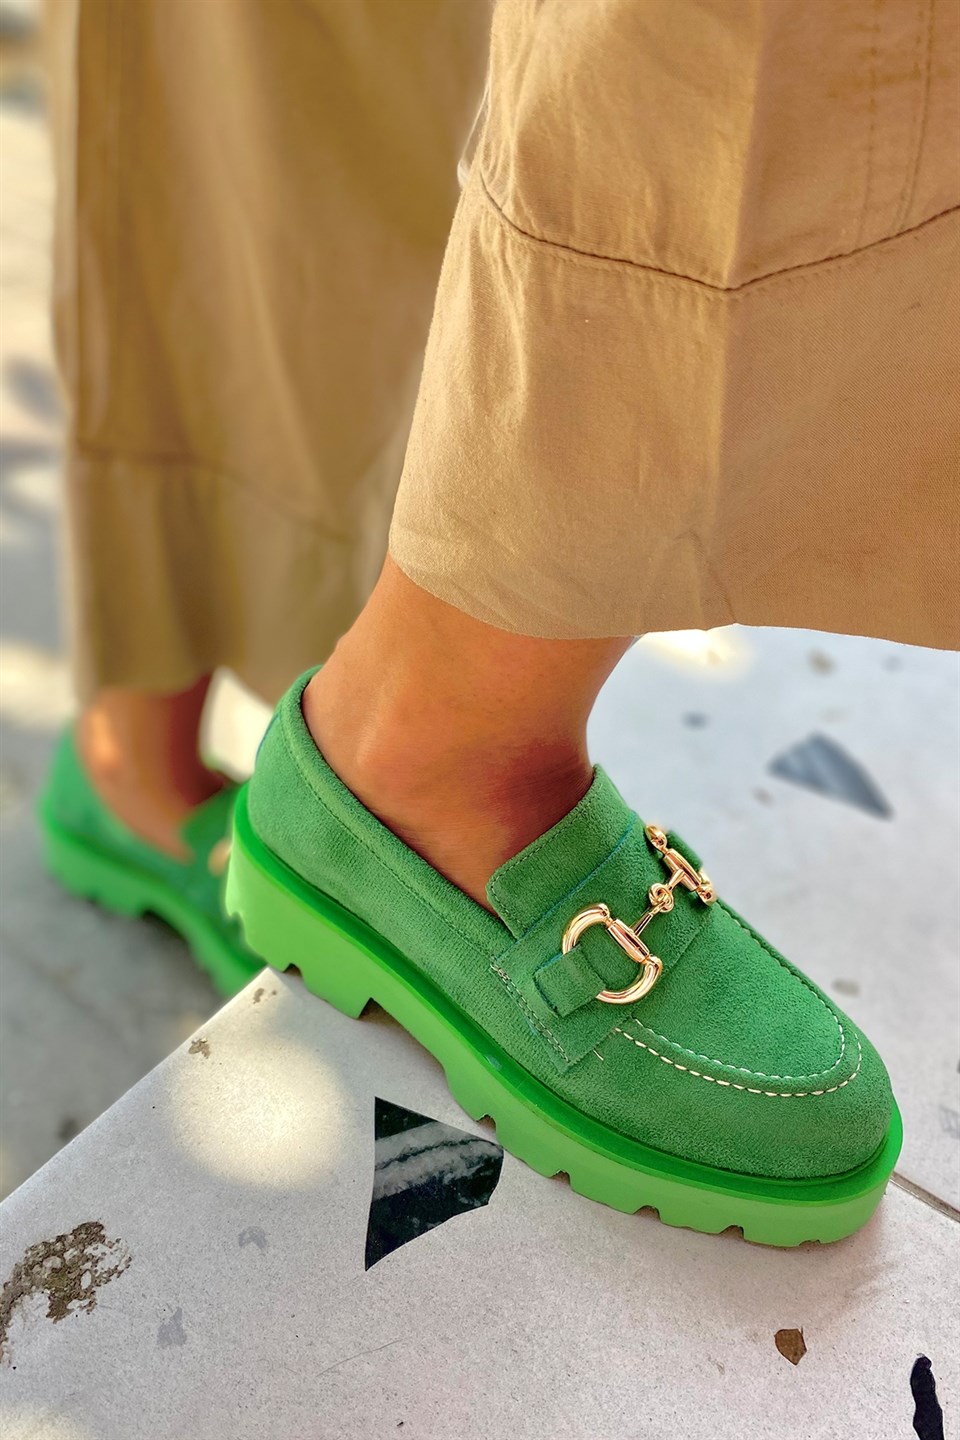 Agnes Yeşil Süet İnce Tokalı Kadın Loafer Ayakkabı